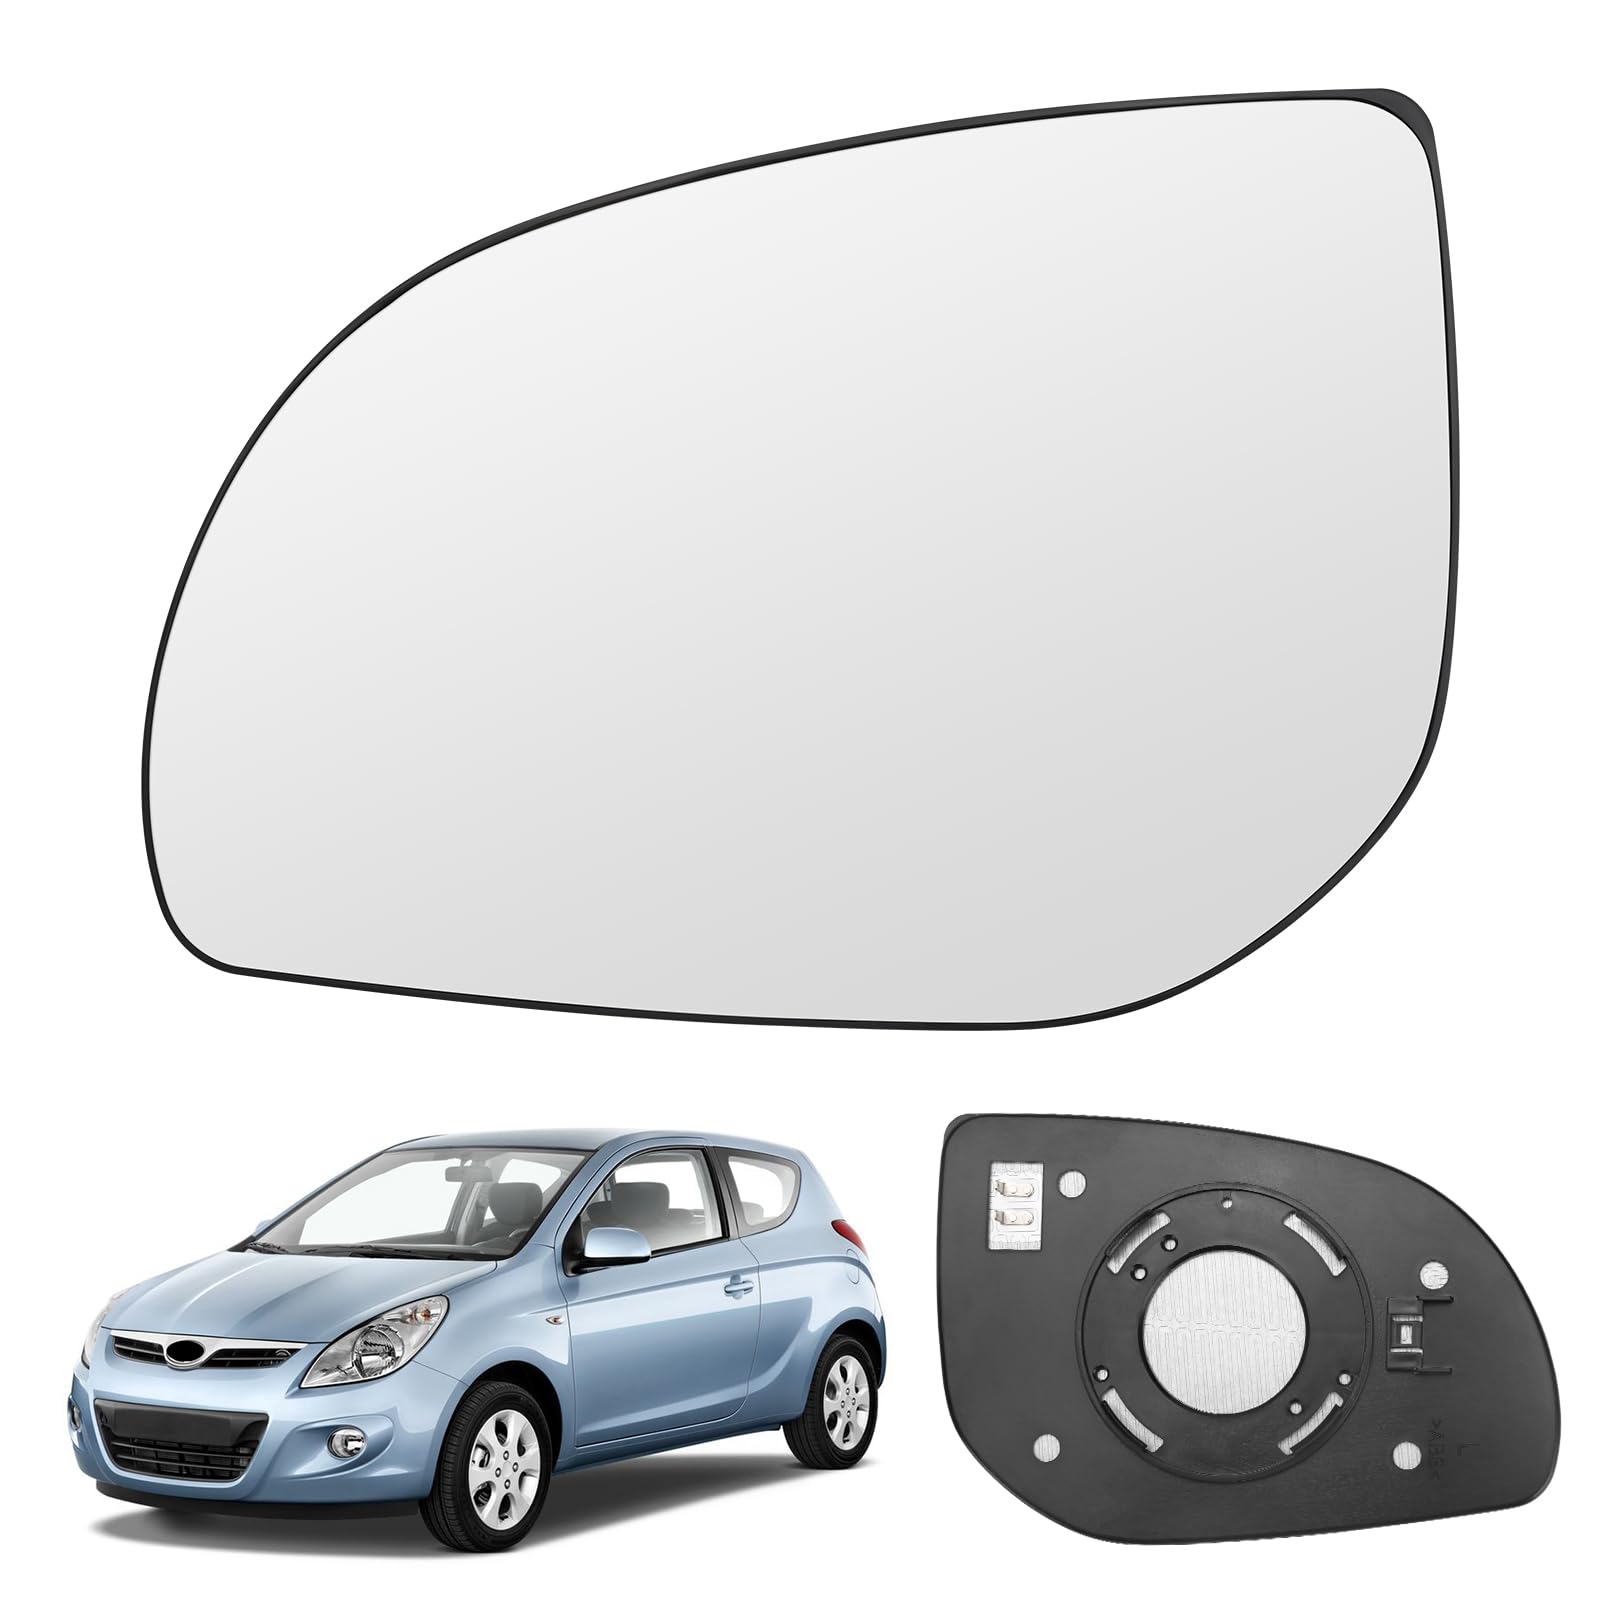 Spiegelglas Ersatz für Hyundai i20 2008-2014, Außenspiegel Glas Asphärisch Verstellbar Umkehrlinse Rückfahrglas Geeignet, Umkehrlinse Rückfahrglas Spiegel (Links) von JinsenTGG